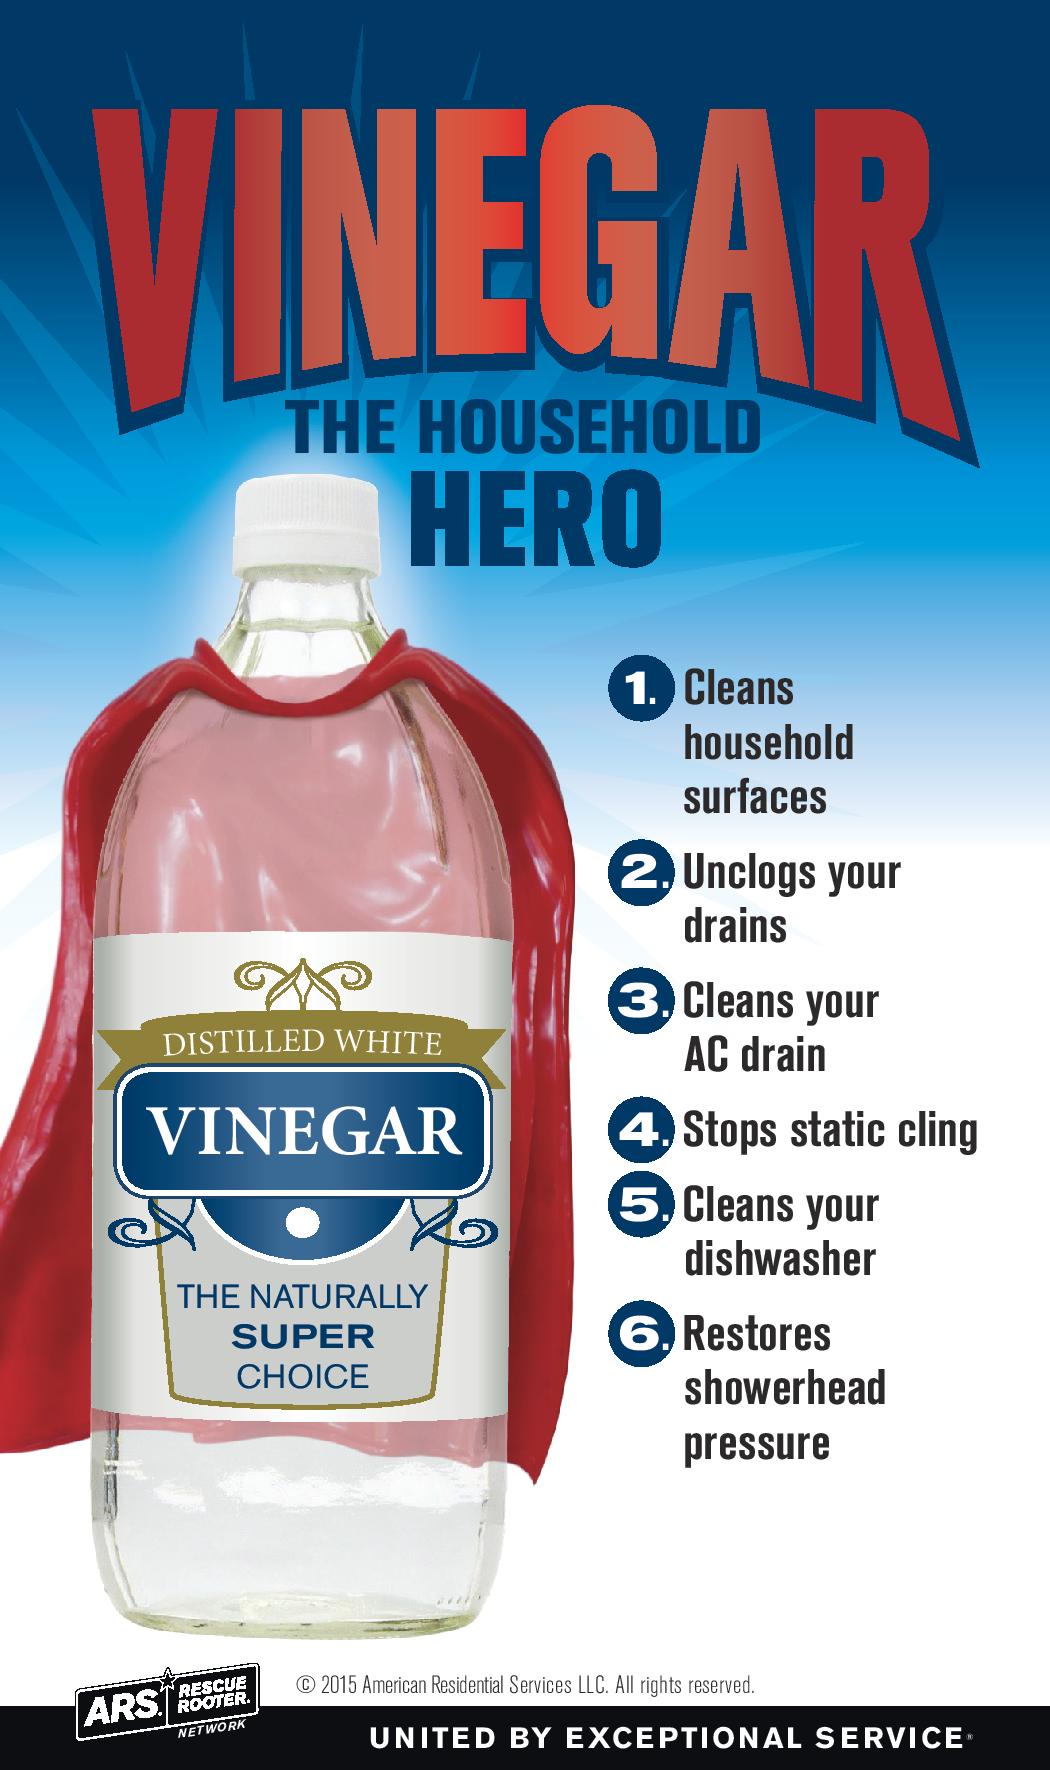 Vinegar household hero